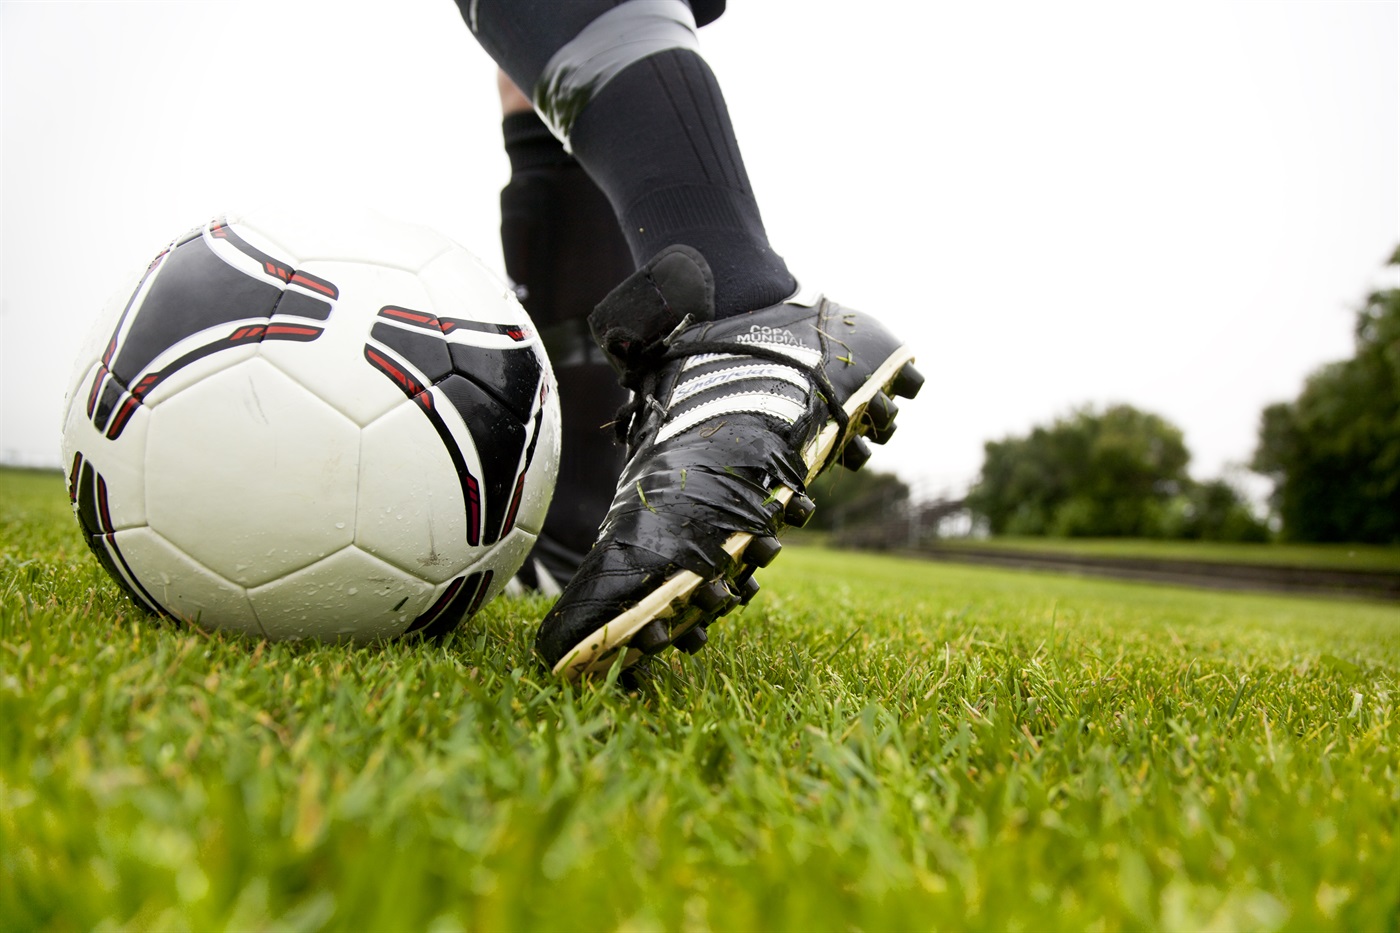 Bilden föreställer en fotbollsspelares fot iförd fotbolsskor.